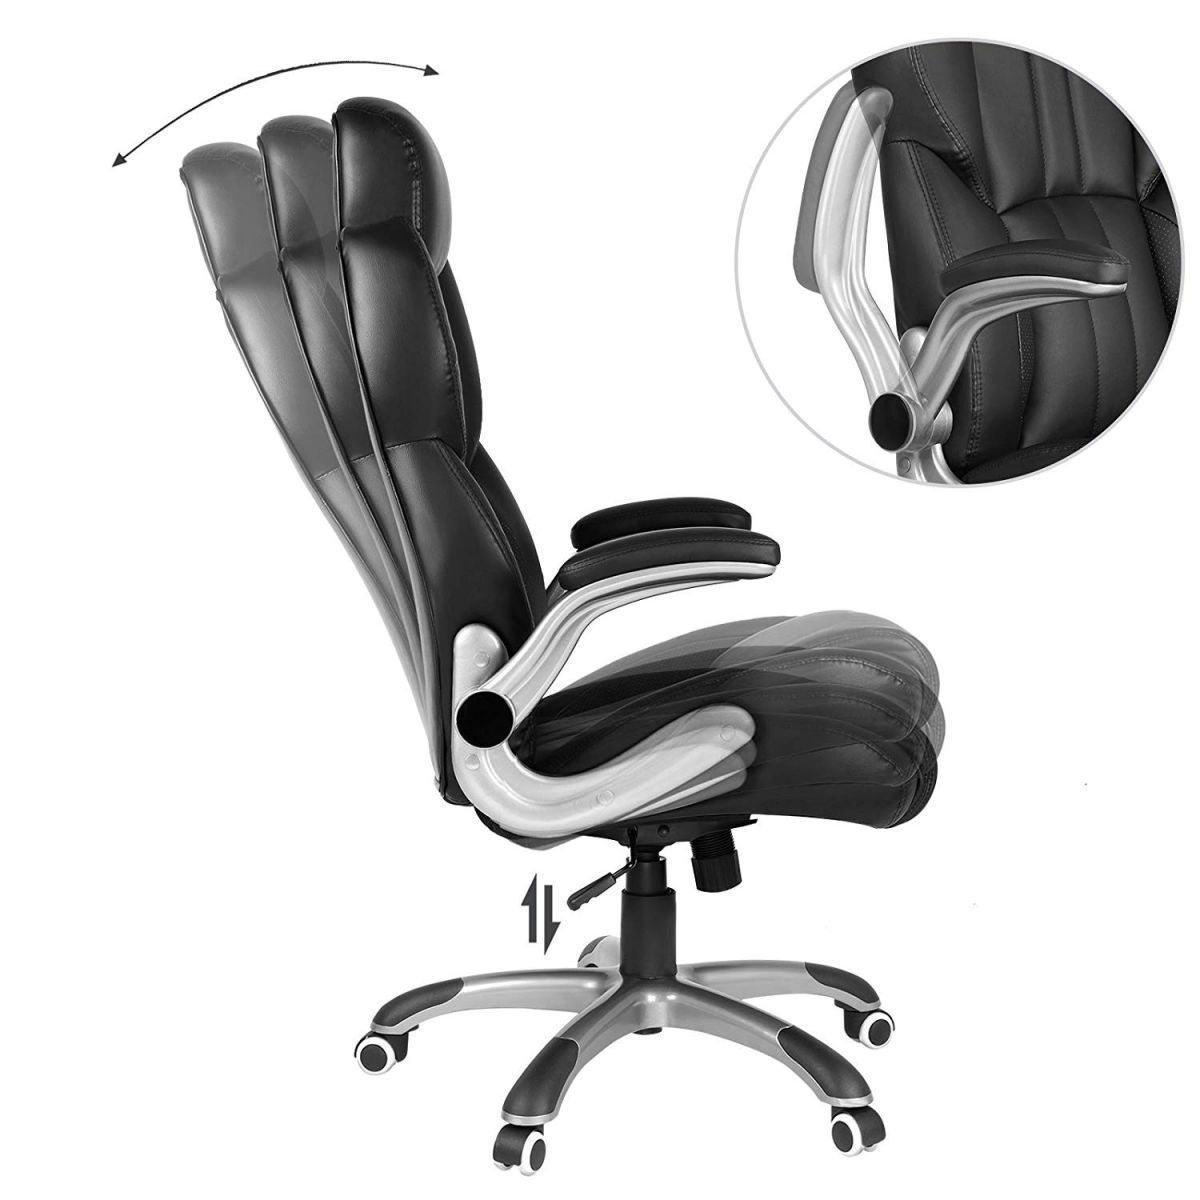 Ergodu Luxury Office Chair with Adjustable Headrest tiltable